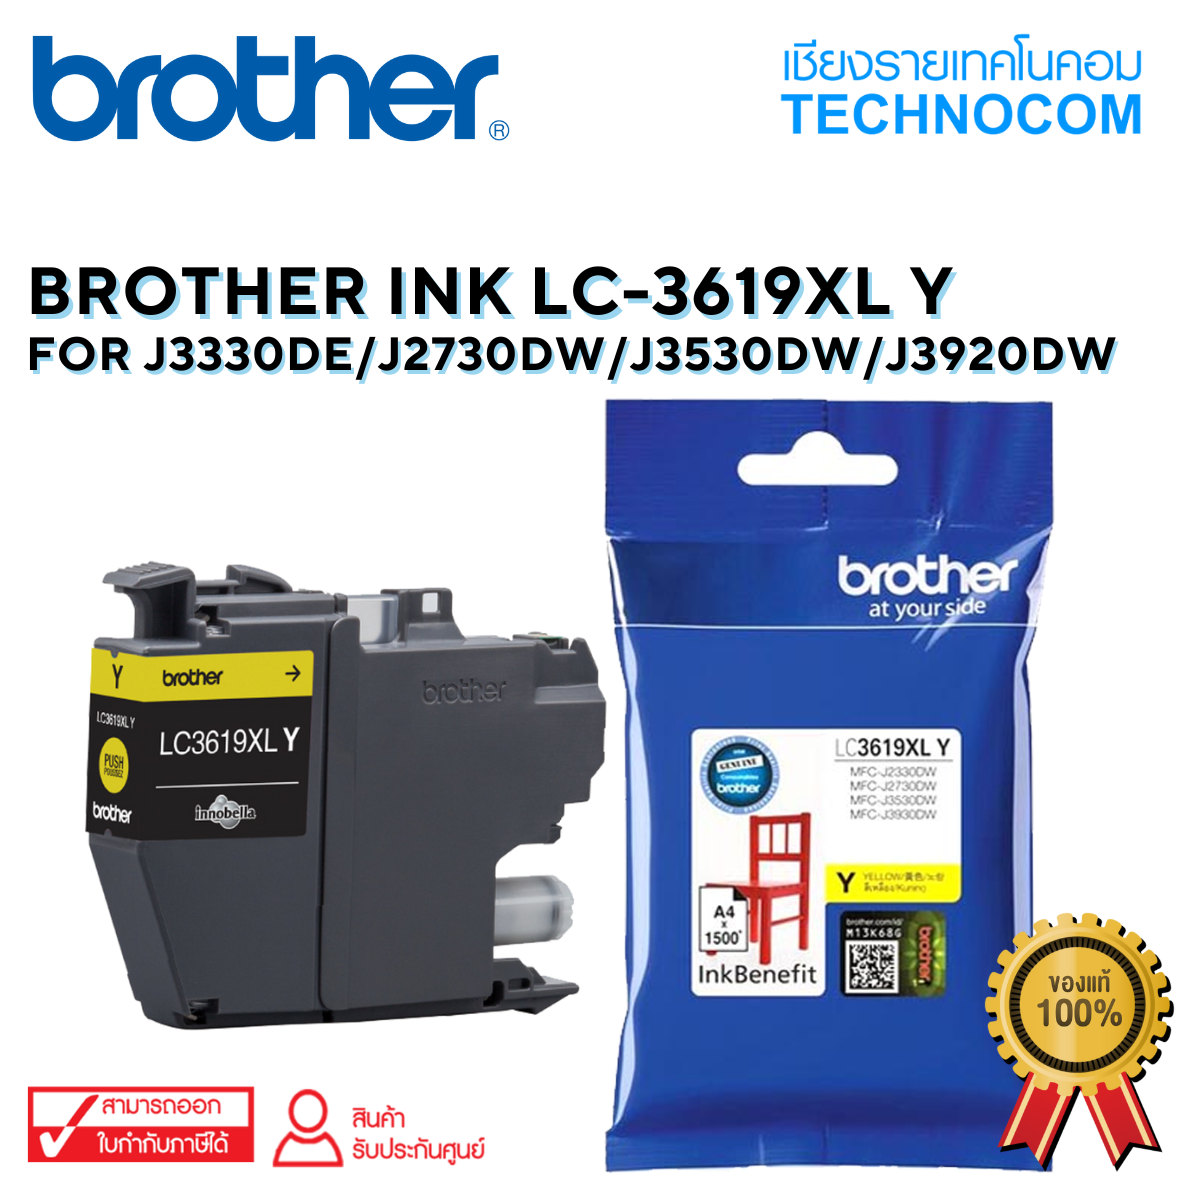 BROTHER INK LC-3619XLY  For J3330DE/J2730DW/J3530DW/J3920DW